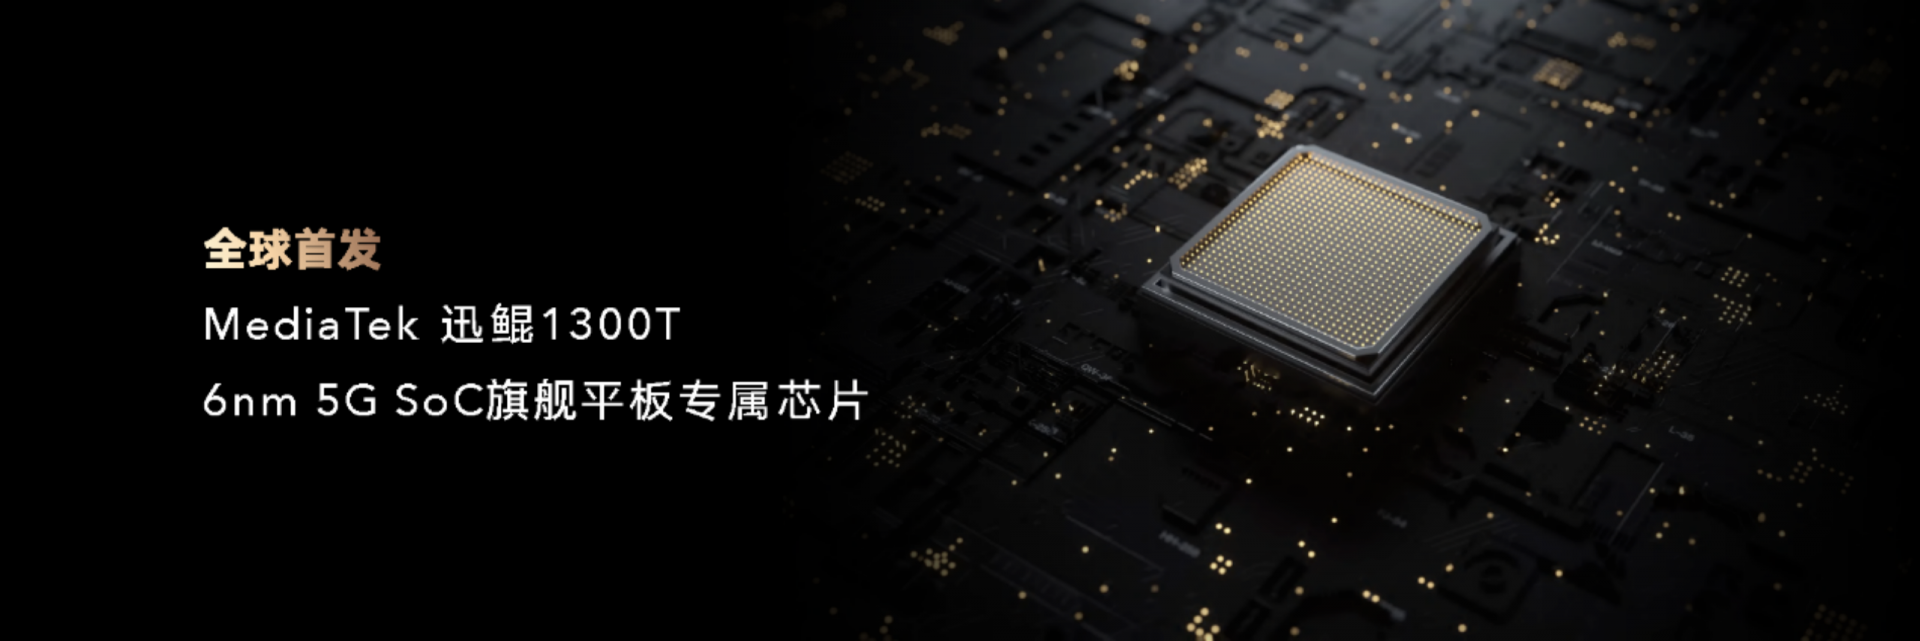 荣耀平板v7 pro也来了,全球首发迅鲲1300t芯片|华为平板|华为荣耀